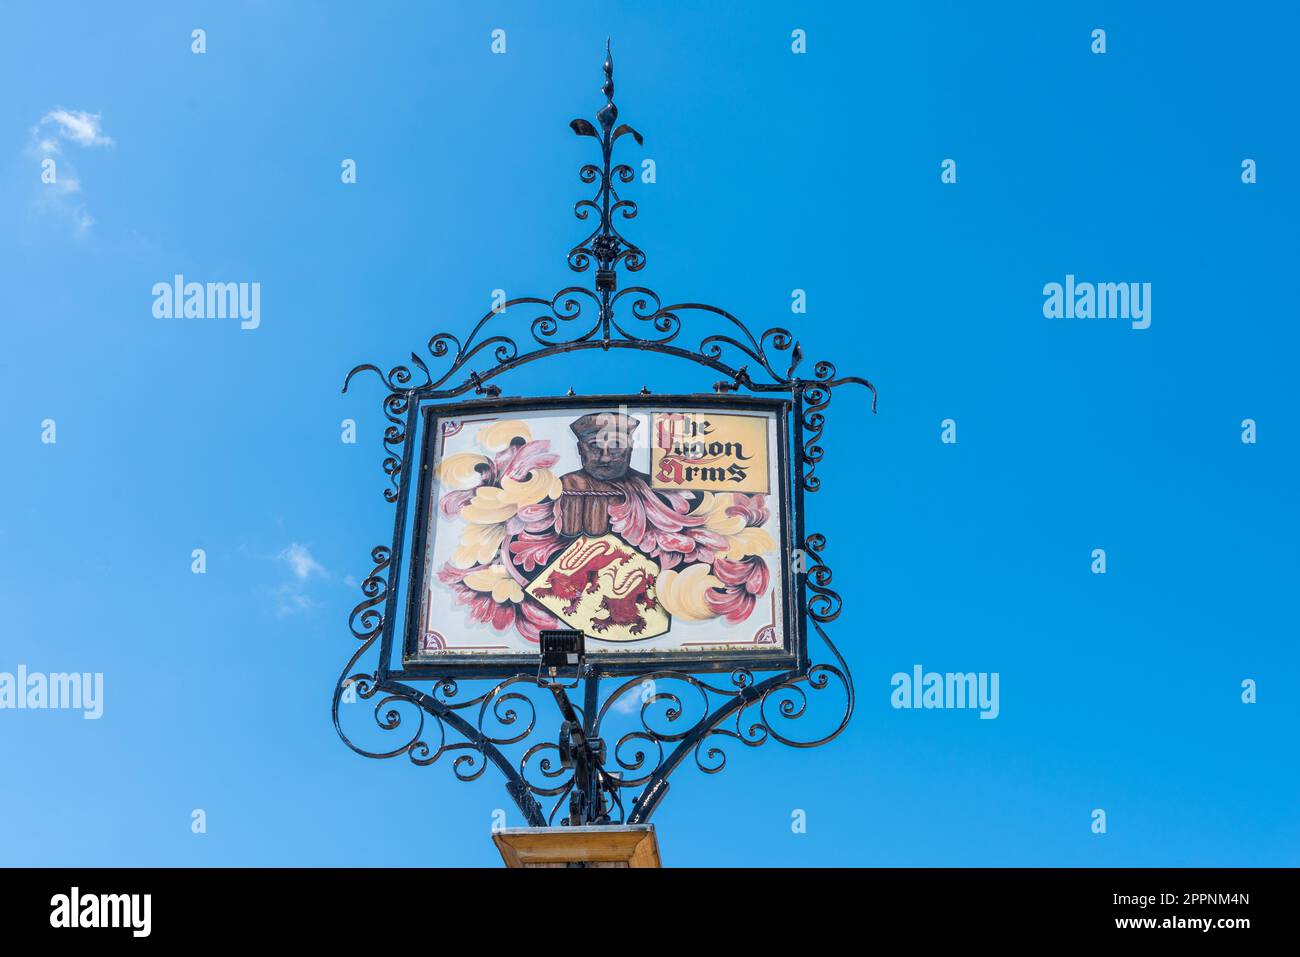 Dekoratives Schild für das Lygon Arms Hotel im hübschen Dorf Cotswold am Broadway in Worcestershire, England, Großbritannien Stockfoto